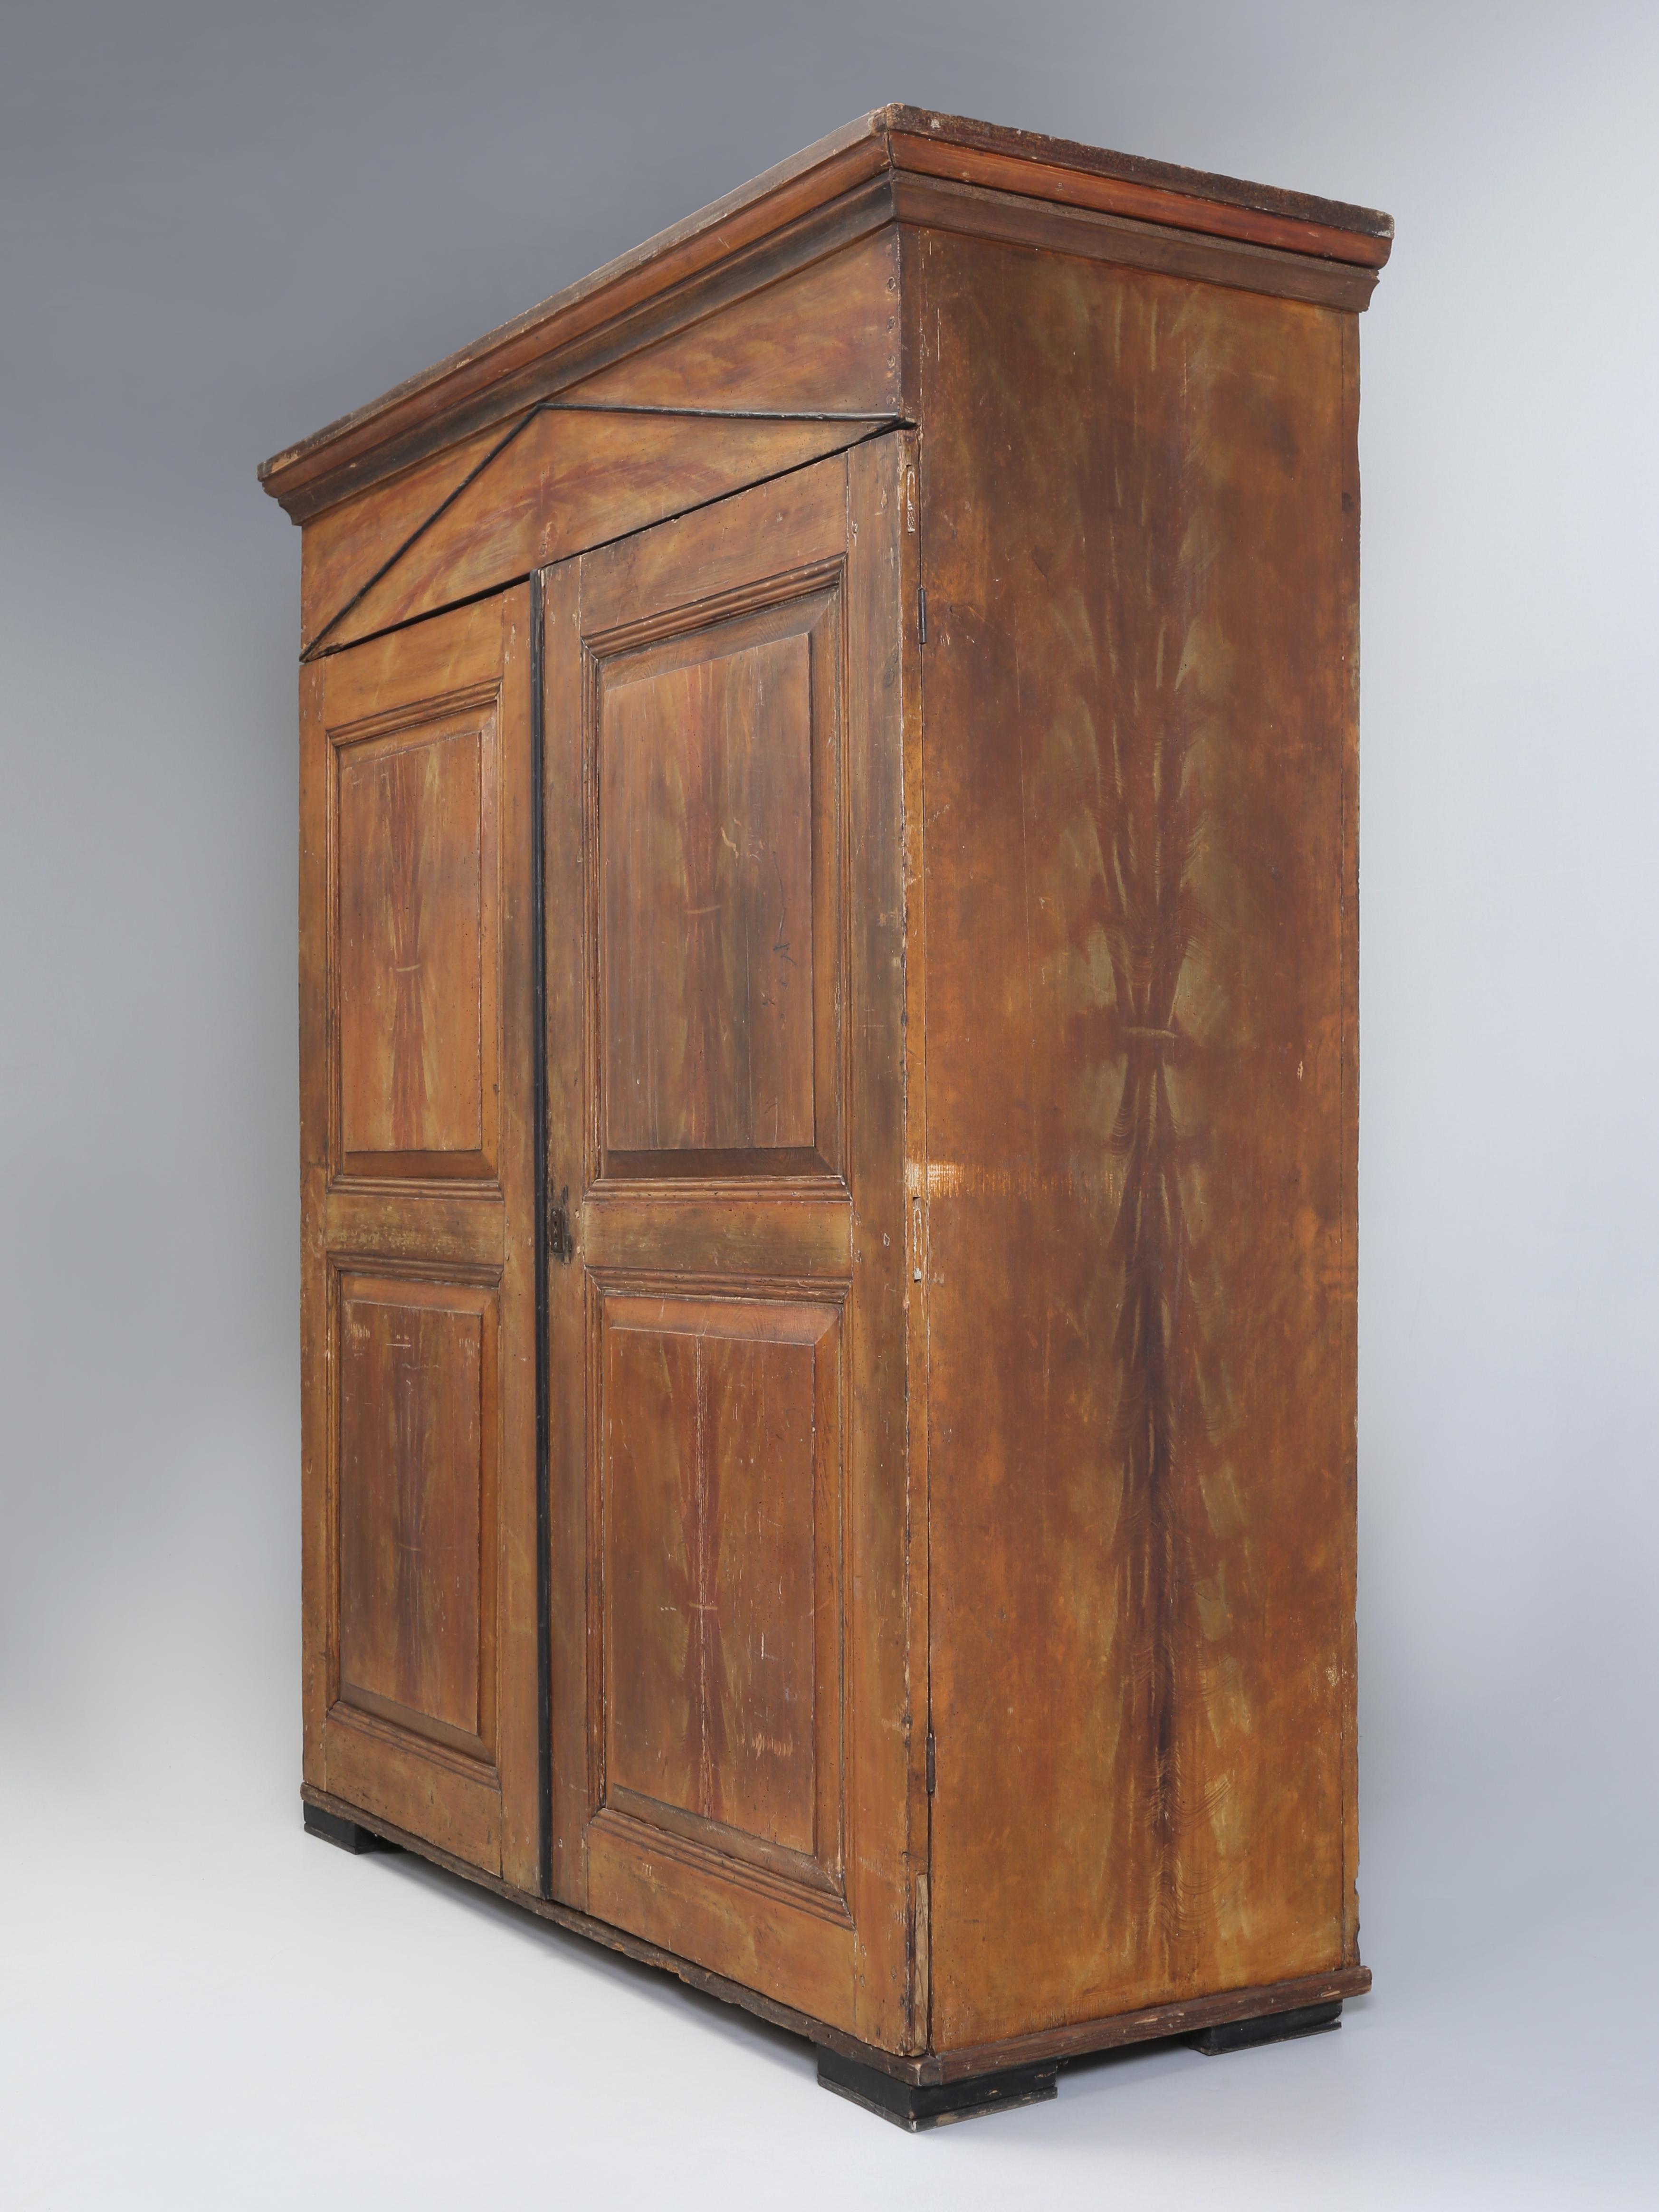 Armoire danoise ancienne, ou armoire si vous préférez, dont la finition, vieille de 250 ans, n'a pas été restaurée et qui comprend un pochoir de blé magnifiquement exécuté. Il est déjà difficile de trouver une vieille armoire peinte d'origine, mais